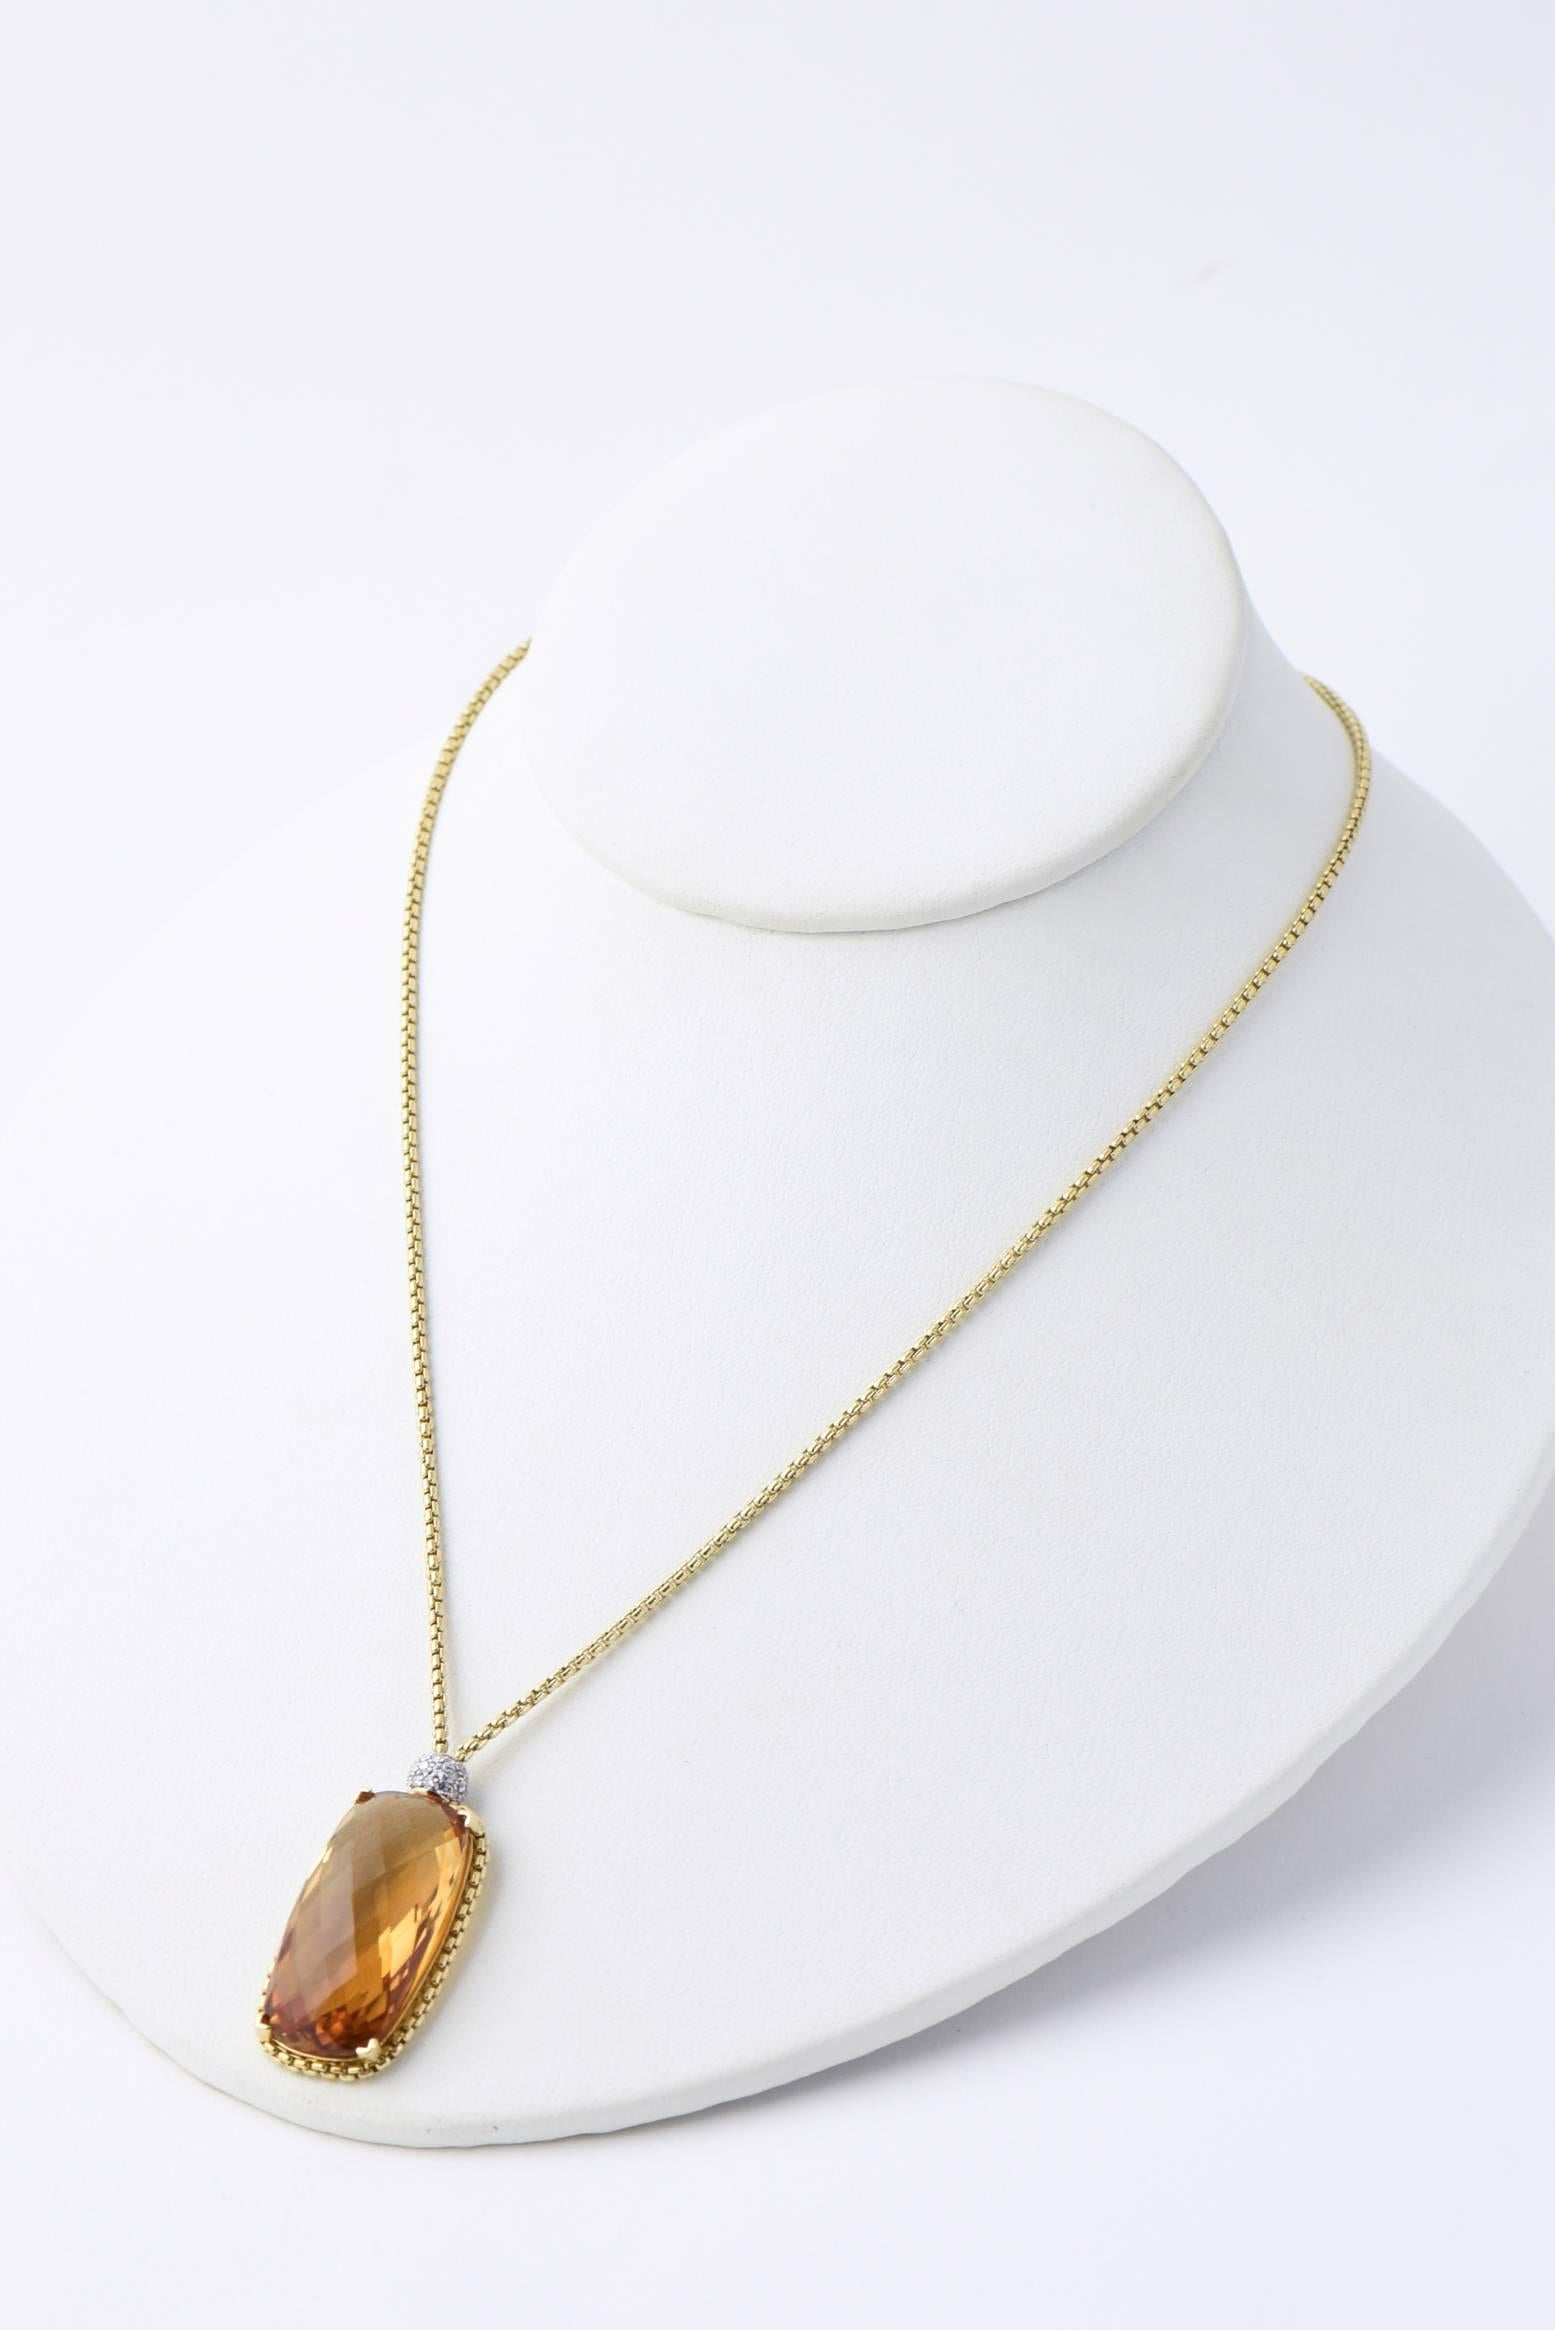 David Yurman Citrine Diamond Pendant Gold Necklace In Excellent Condition In Miami Beach, FL